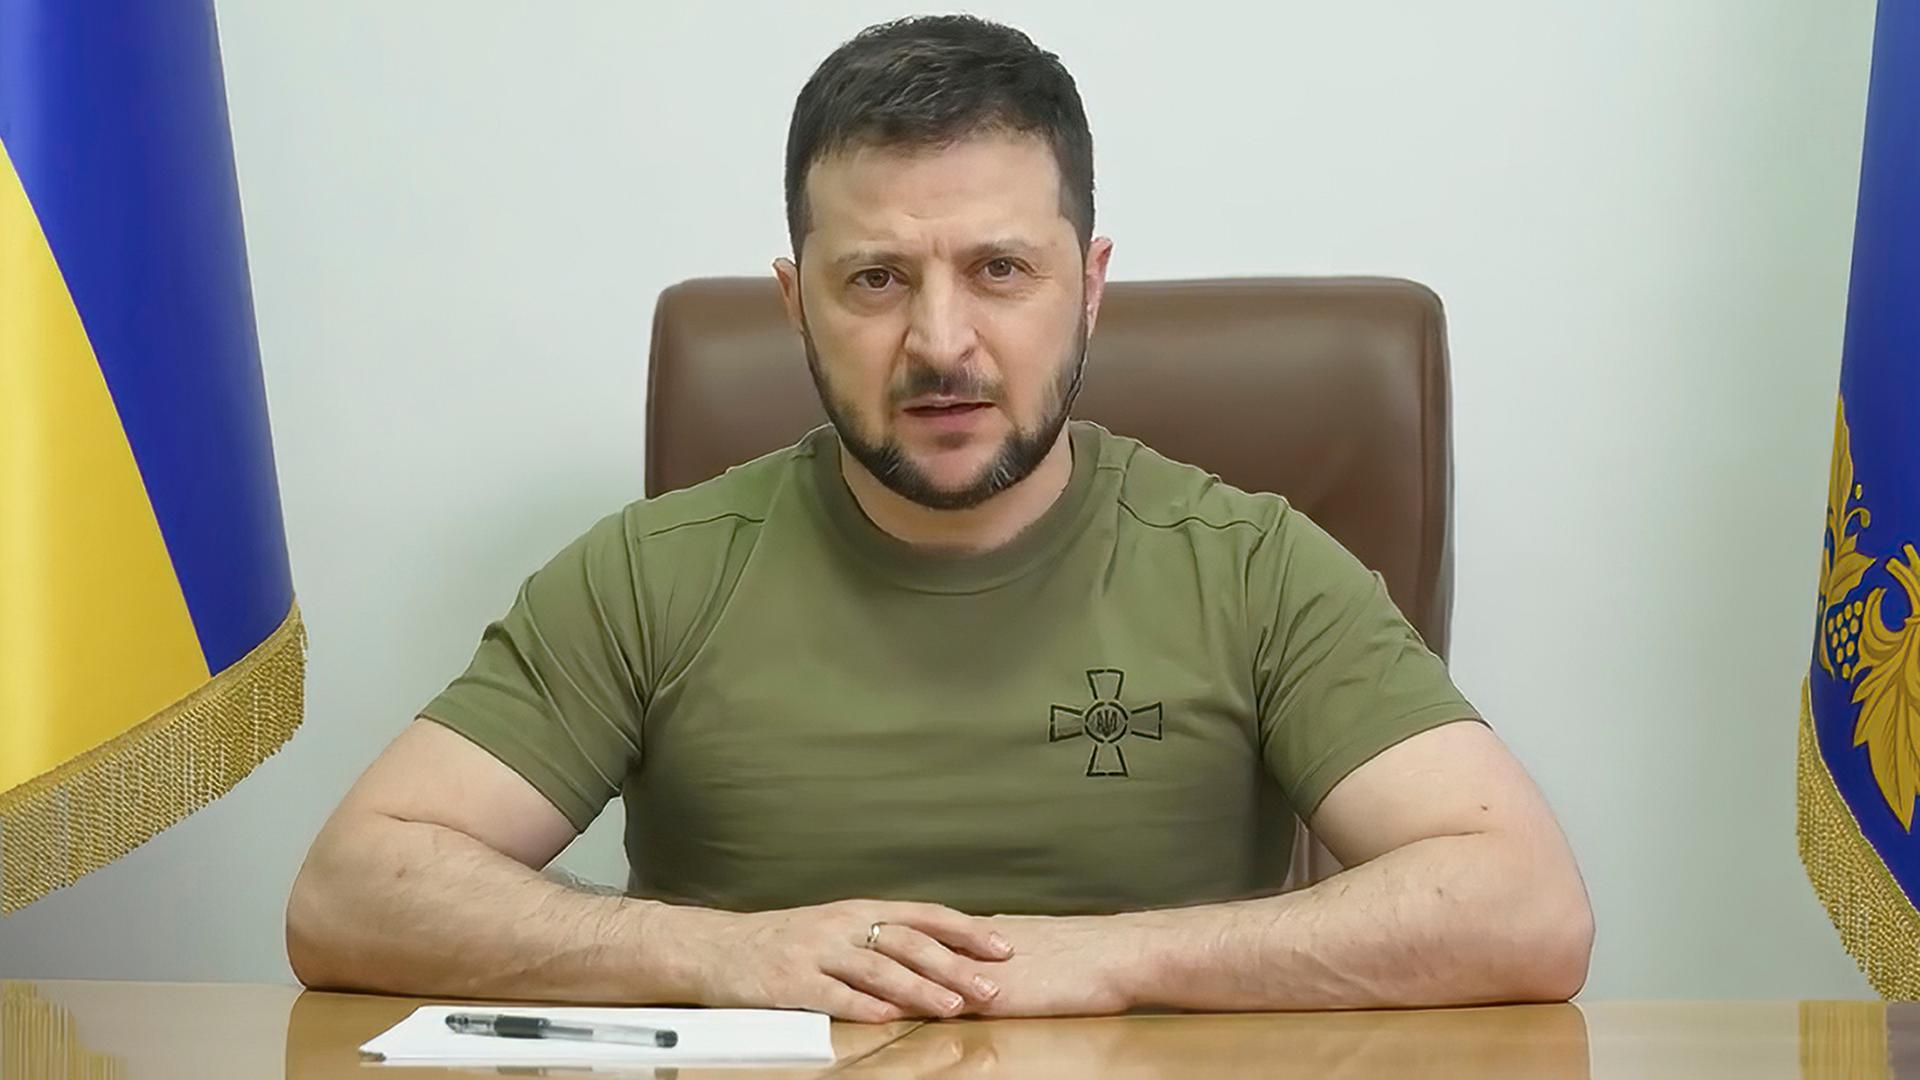 Selenskyj im olivgrünen T-Shirt sitzt an einem Tisch und spricht. Rechts und links von ihm jeweils eine ukrainische Fahne.